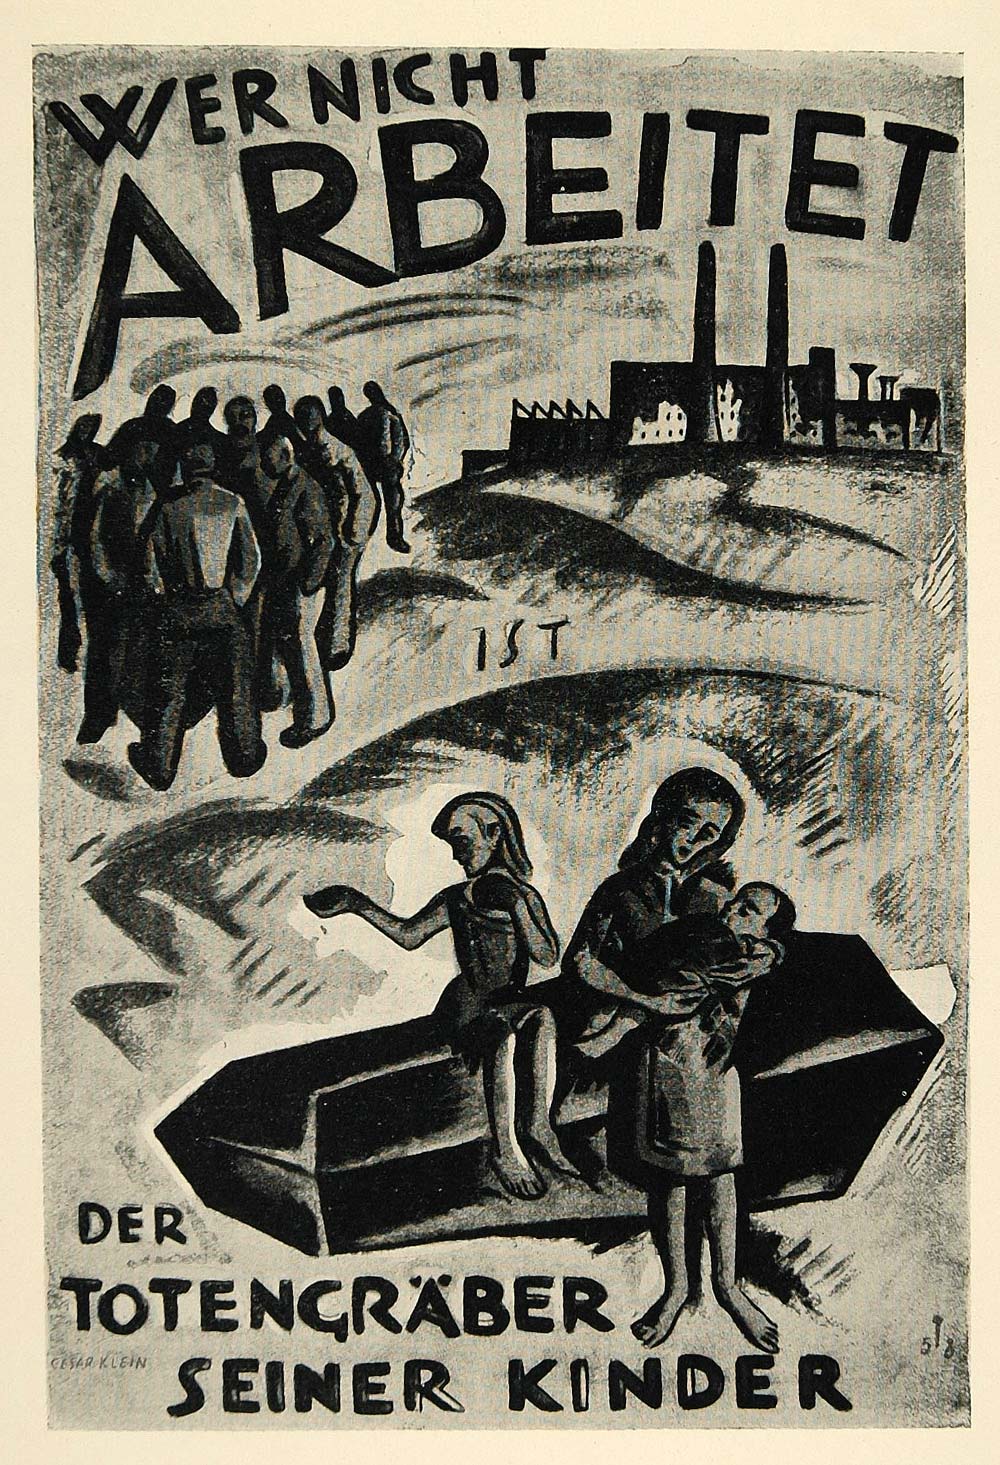 1924 Print Cesar Klein Mini Poster Art German Factory Wer Nicht Arbeitet Germany